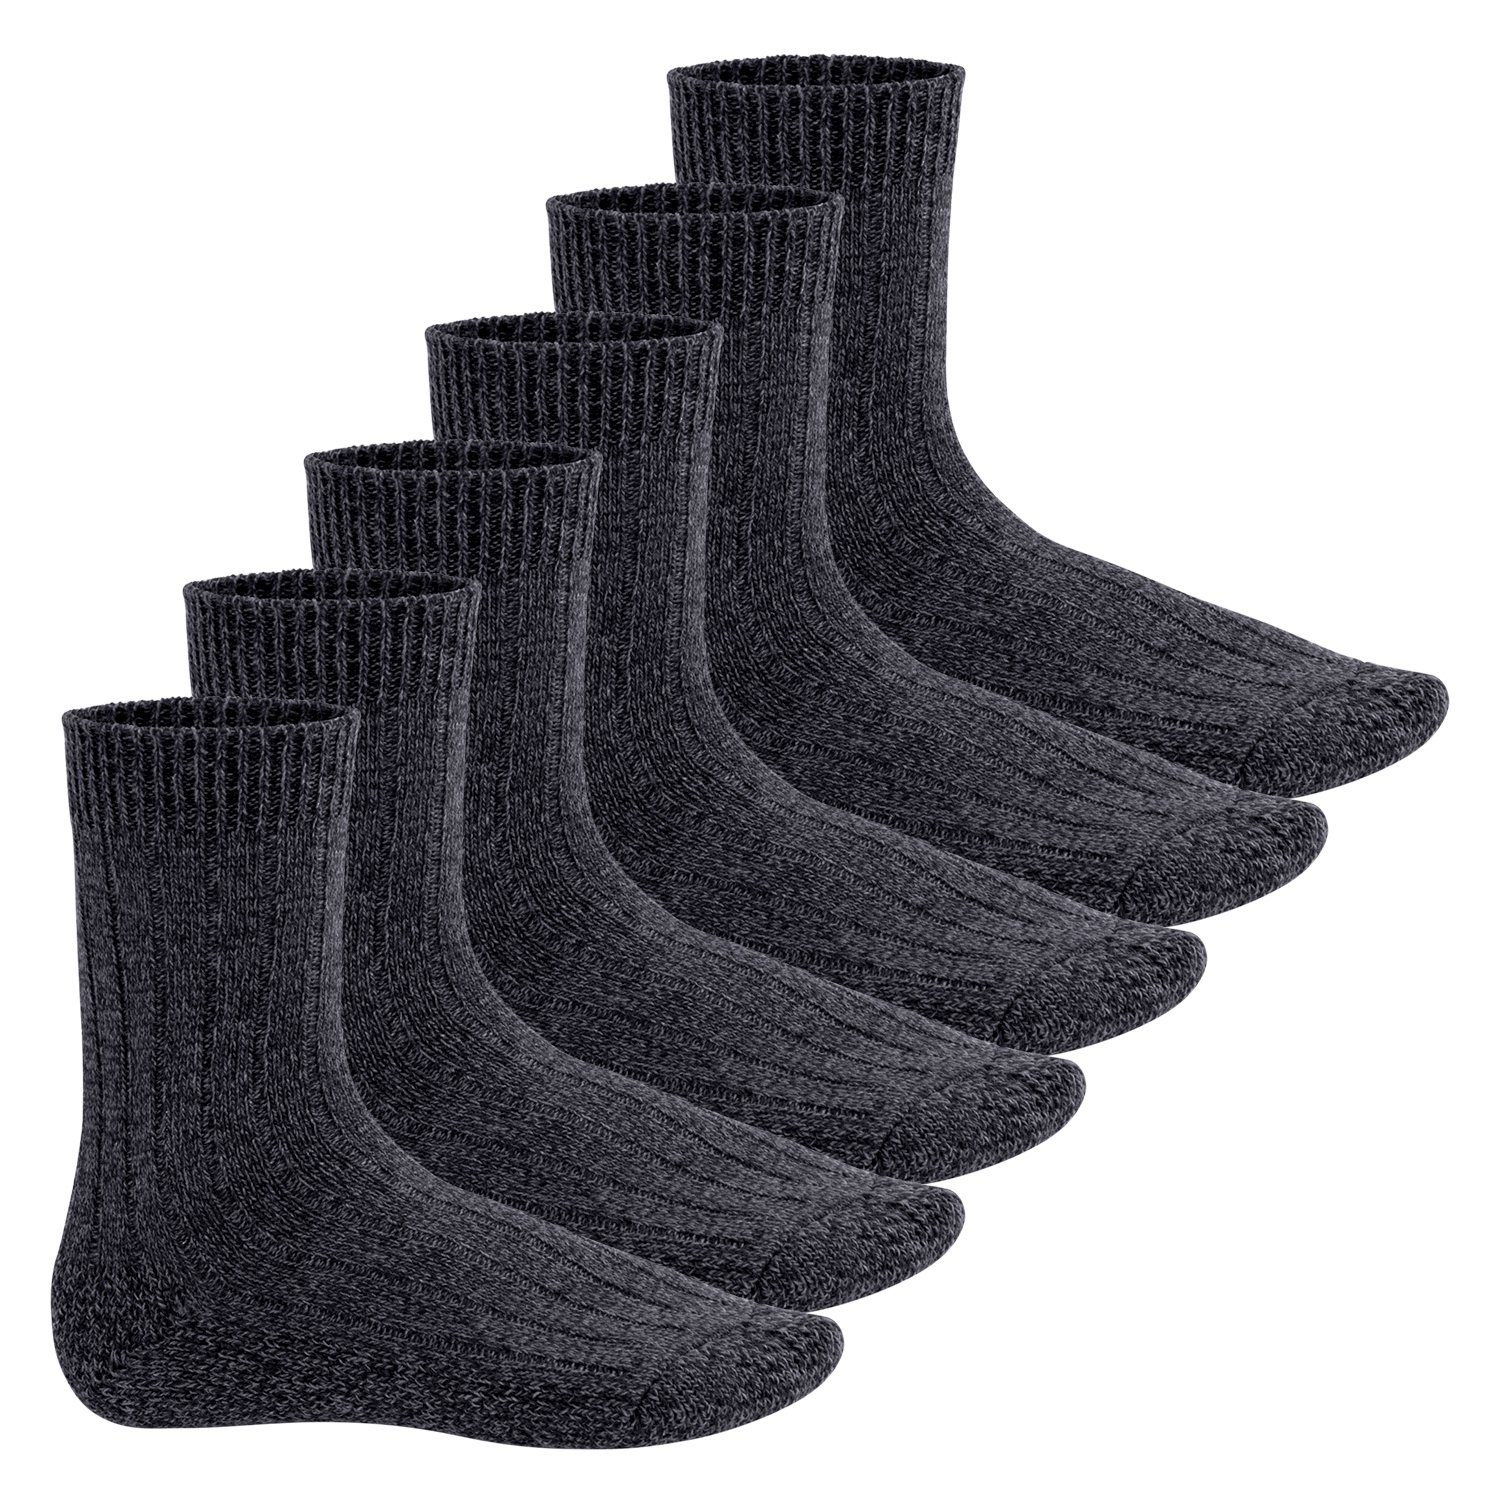 Footstar Norwegersocken Herren Winter Norweger Socken (6 Paar) Frottee Plüschsohle Grey Melange